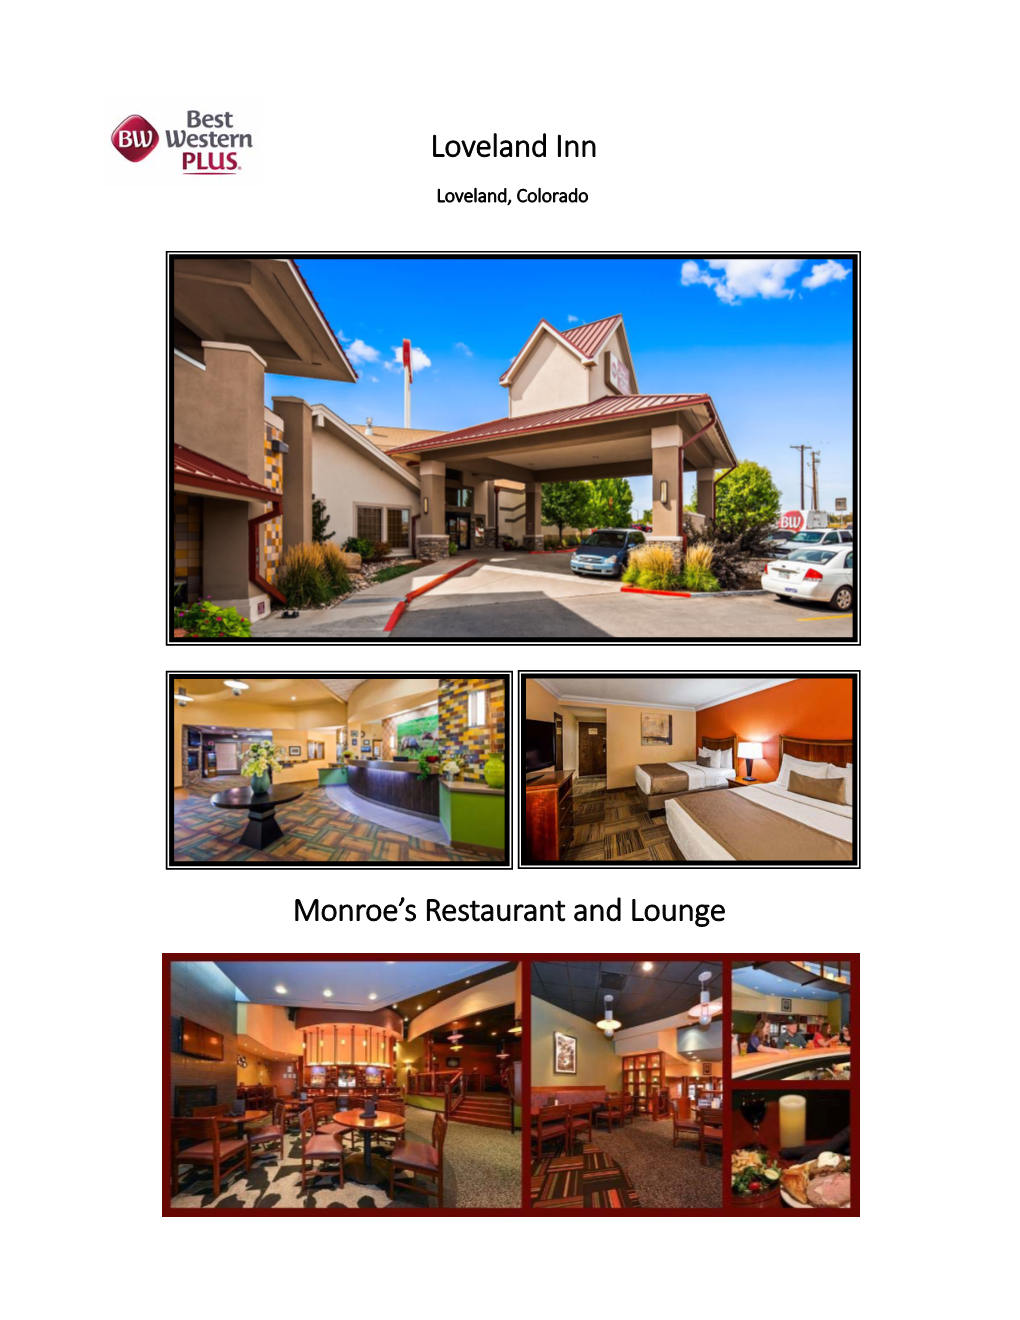 Loveland Inn Monroe's Restaurant and Lounge